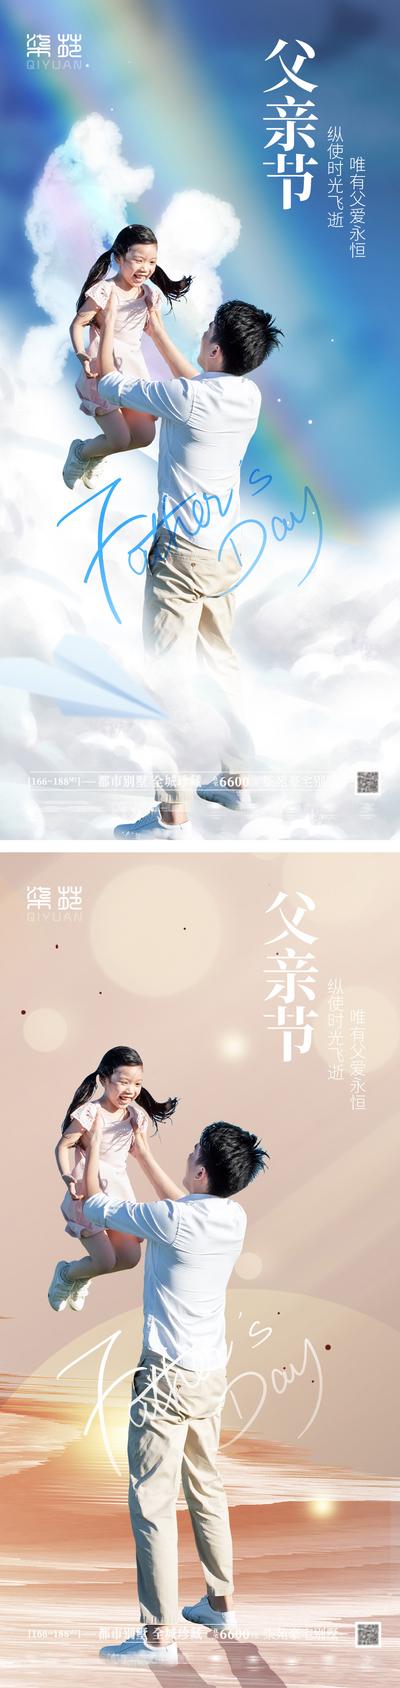 南门网 海报 房地产 公历节日 父亲节 创意 简约 天空 彩虹 亲子 系列